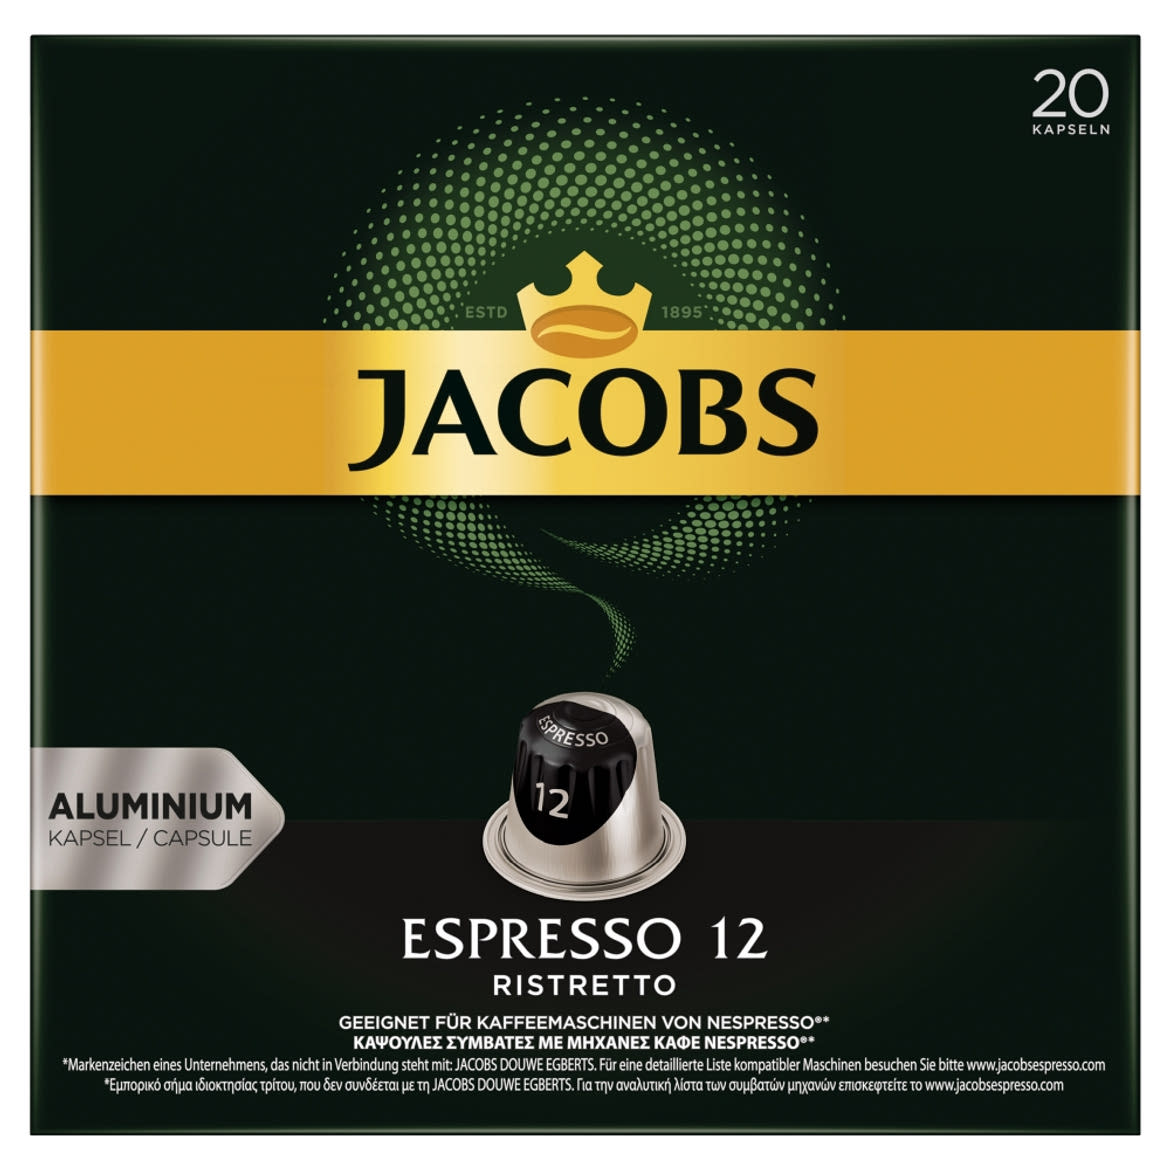 Jacobs Espresso 12 Ristretto őrölt-pörkölt kávé kapszulában